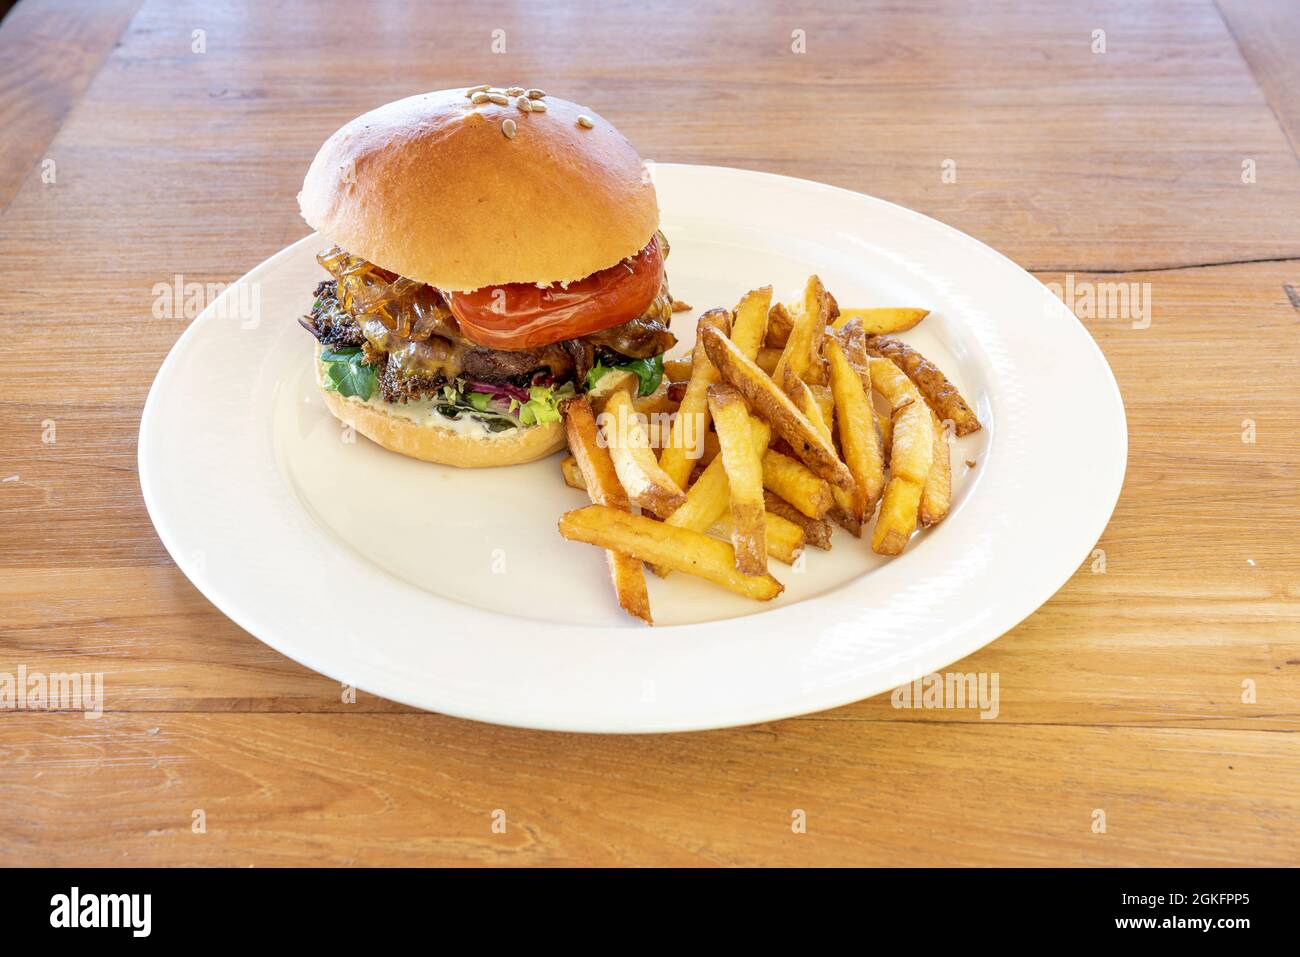 Toller Hamburger mit gebratenem Pfeffer, karamellisierten Zwiebeln, Sonnenblumenkernen, Salatsprossen und Pommes frites mit Schale auf einem Holztisch Stockfoto